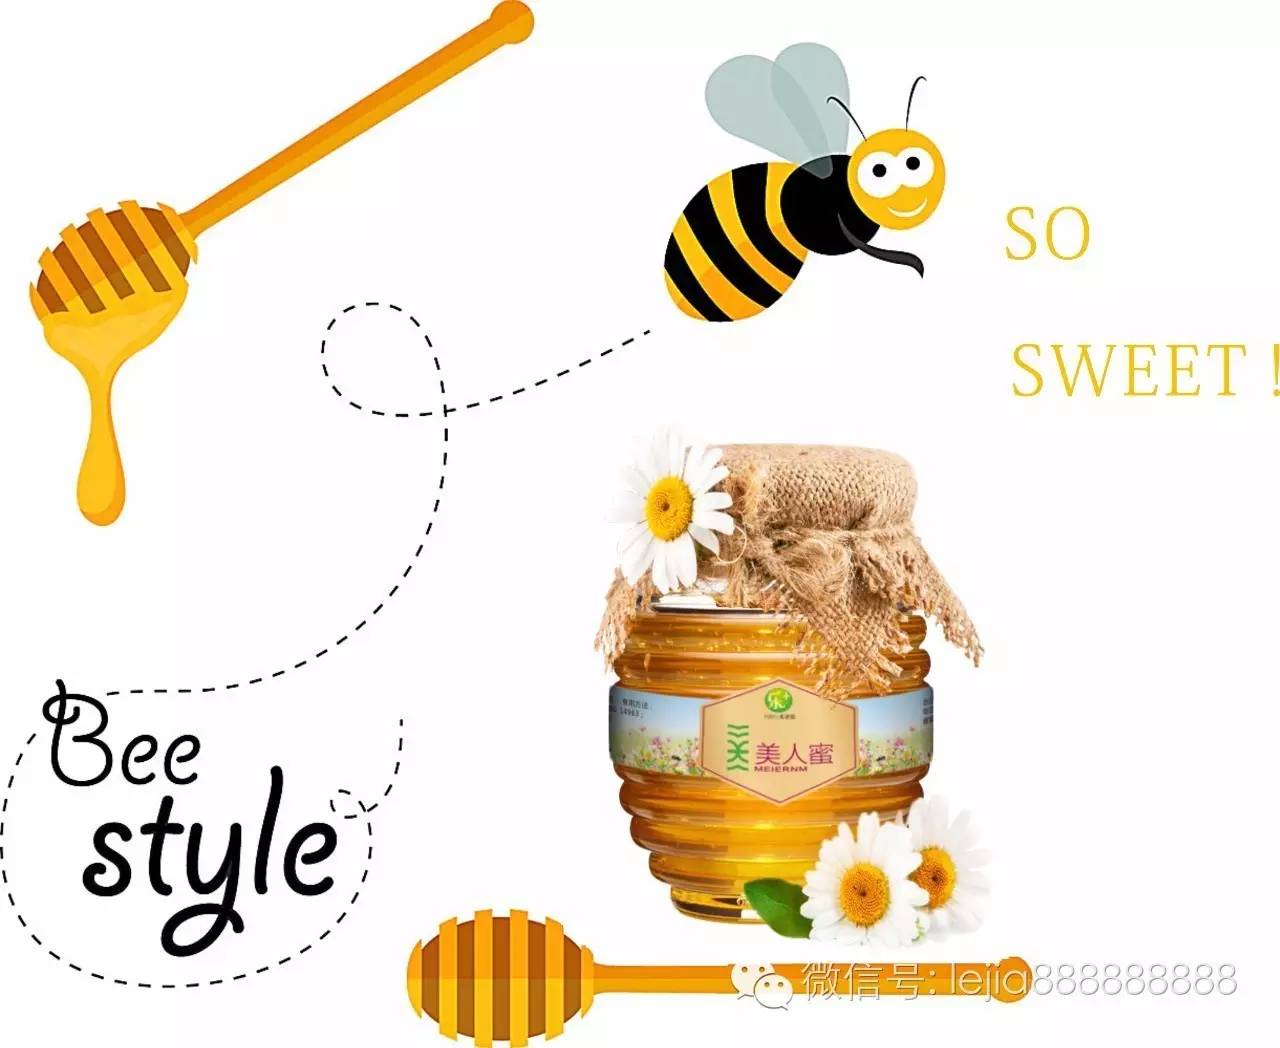 蜂蜜咖啡 晚上喝蜂蜜水好吗 蜂蜜检验 蜂蜜幸运草 洋槐蜂蜜好吗